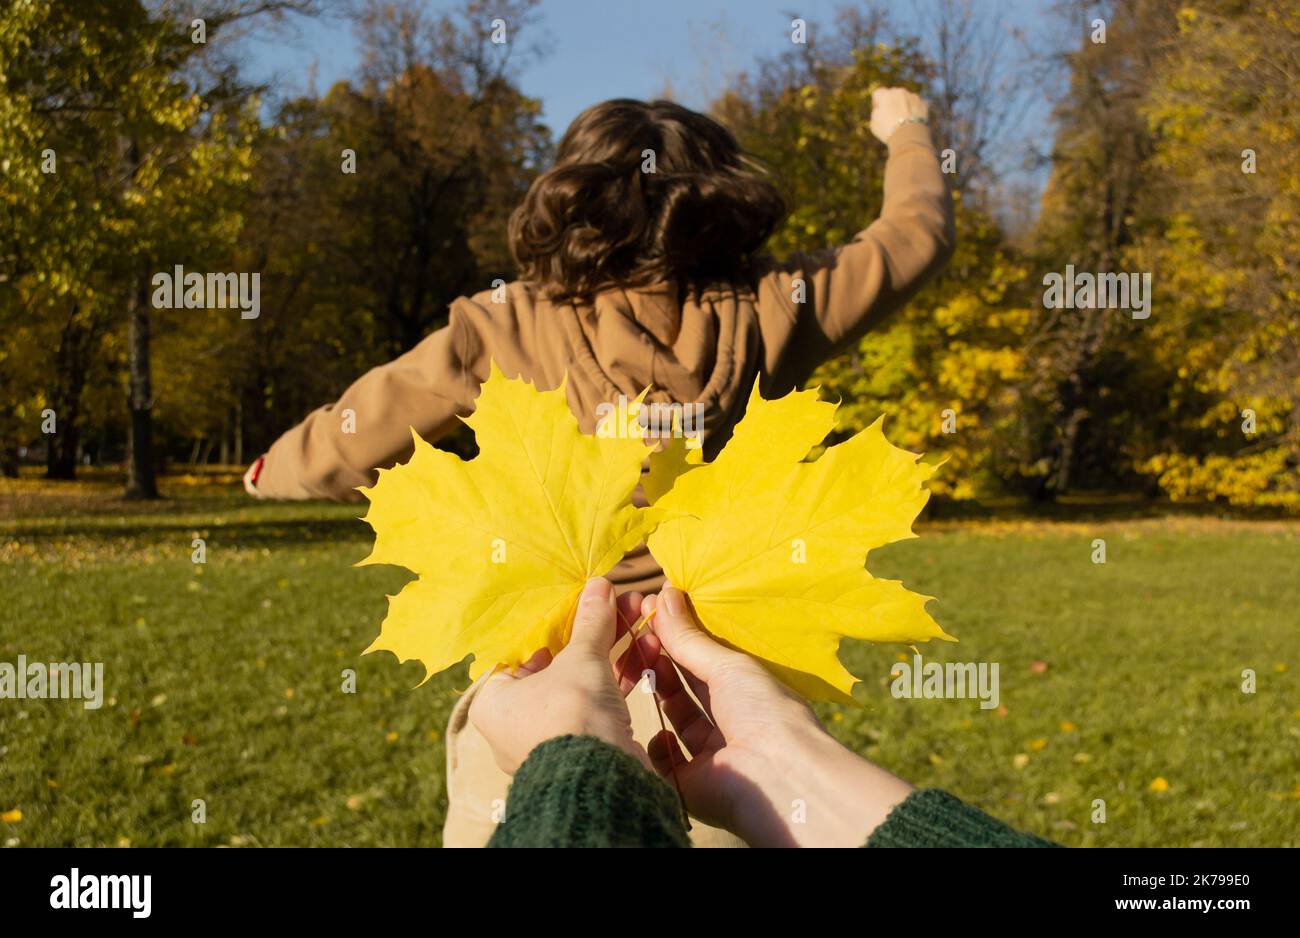 Palme da primo piano che tengono foglie di acero giallo come ali sullo sfondo della donna da dietro, mani in su. Foto Stock